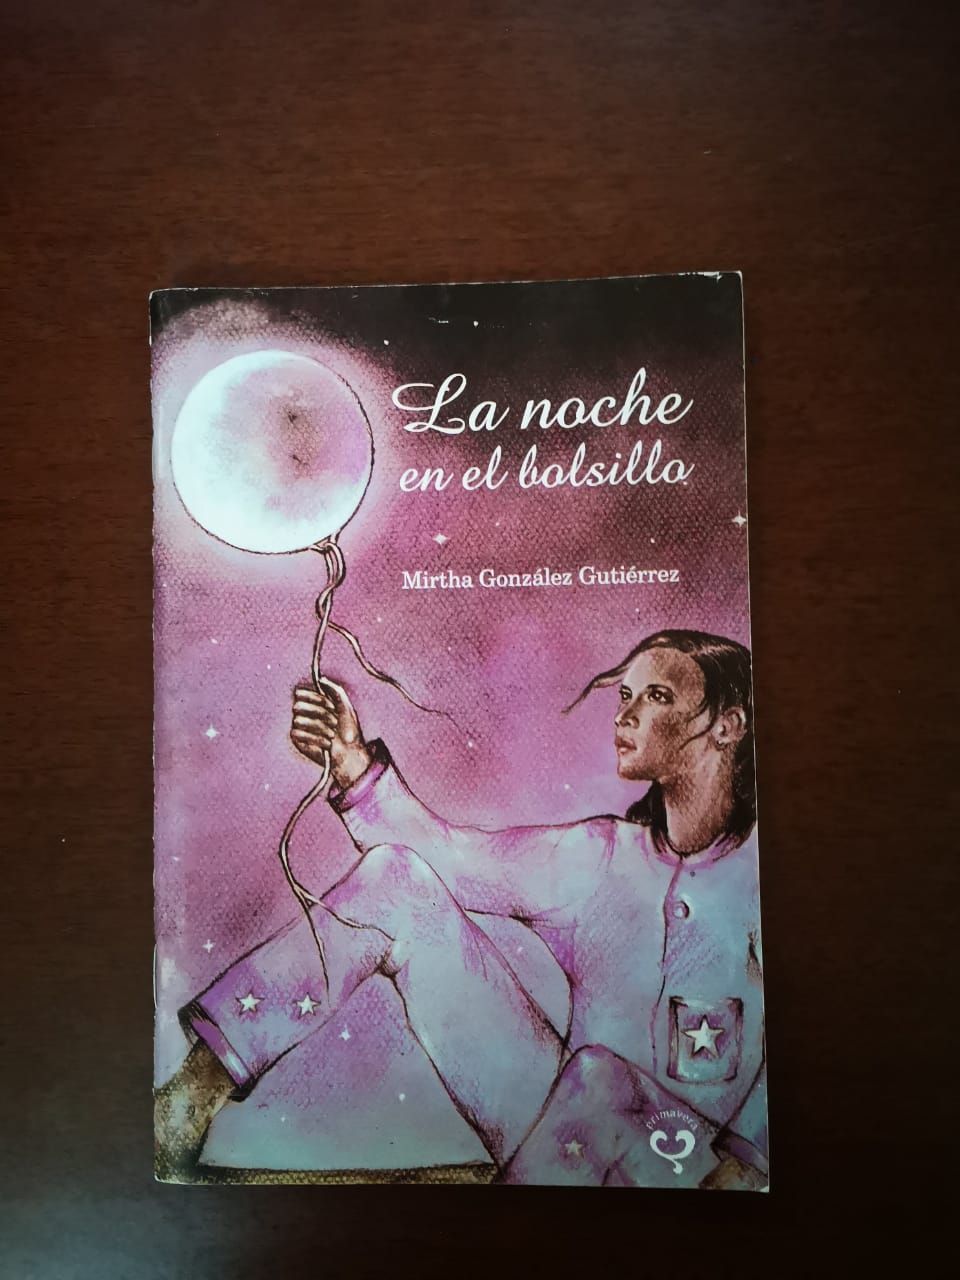 Foto de Programa Nacional por la Lectura. Jornada por el Día del Libro Cubano. Reseña del libro La noche en el bolsillo de Mirtha Gonzalez Gutiérrez.